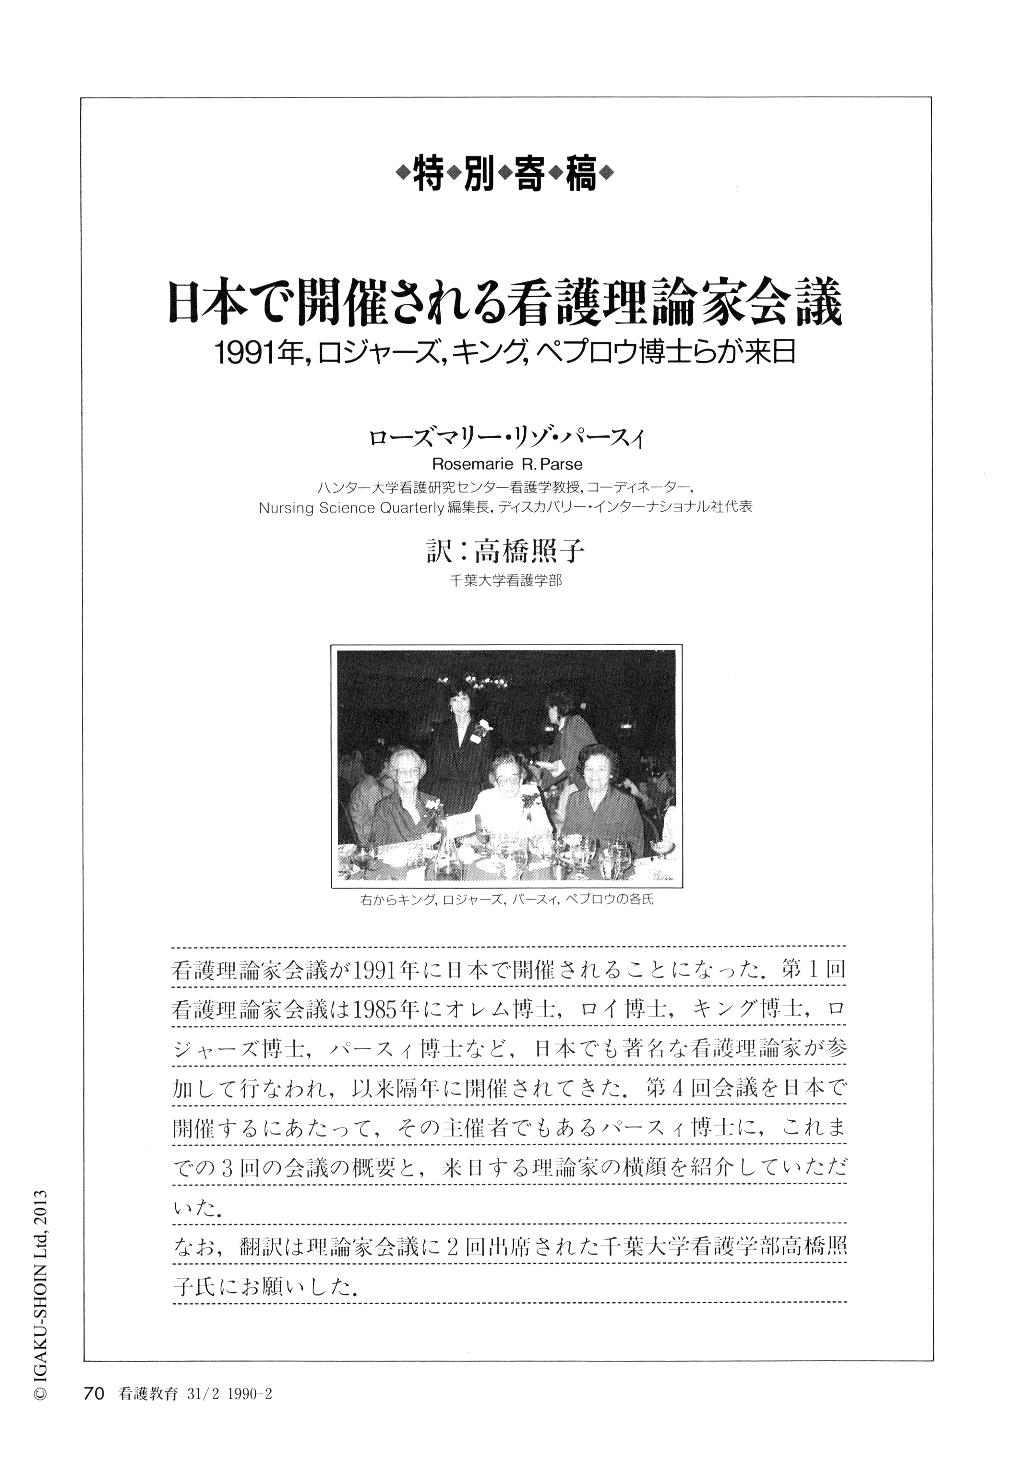 日本で開催される看護理論家会議 1991年 ロジャーズ キング ペプロウ博士らが来日 看護教育 31巻2号 医書 Jp